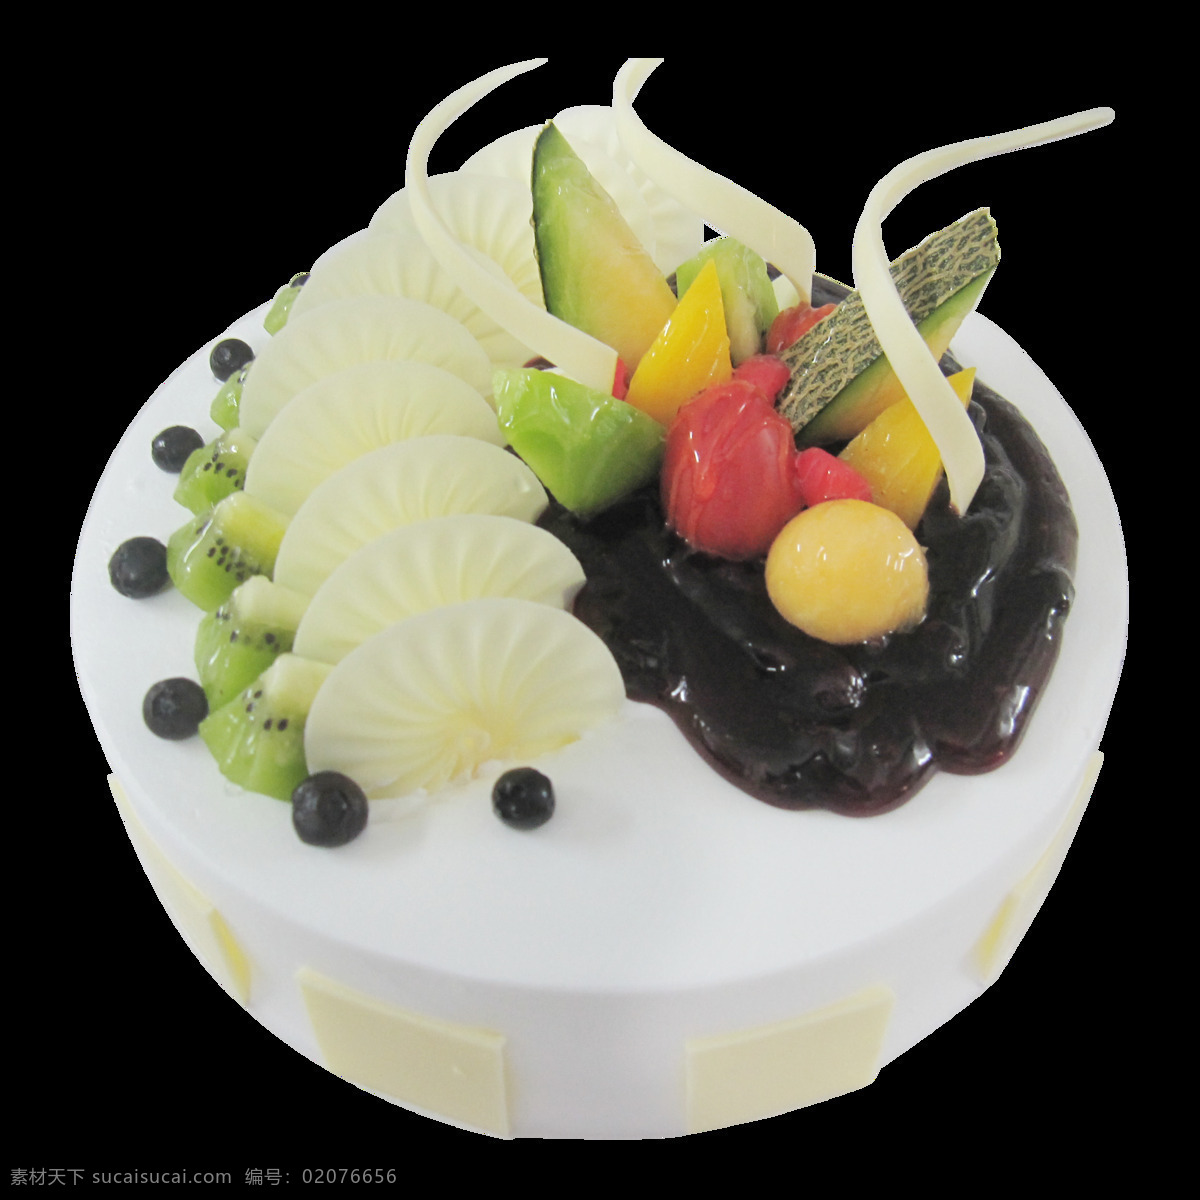 美味 水果 蛋糕 蛋糕图案 精美蛋糕素材 美食 奶油蛋糕 图案设计 西式甜点